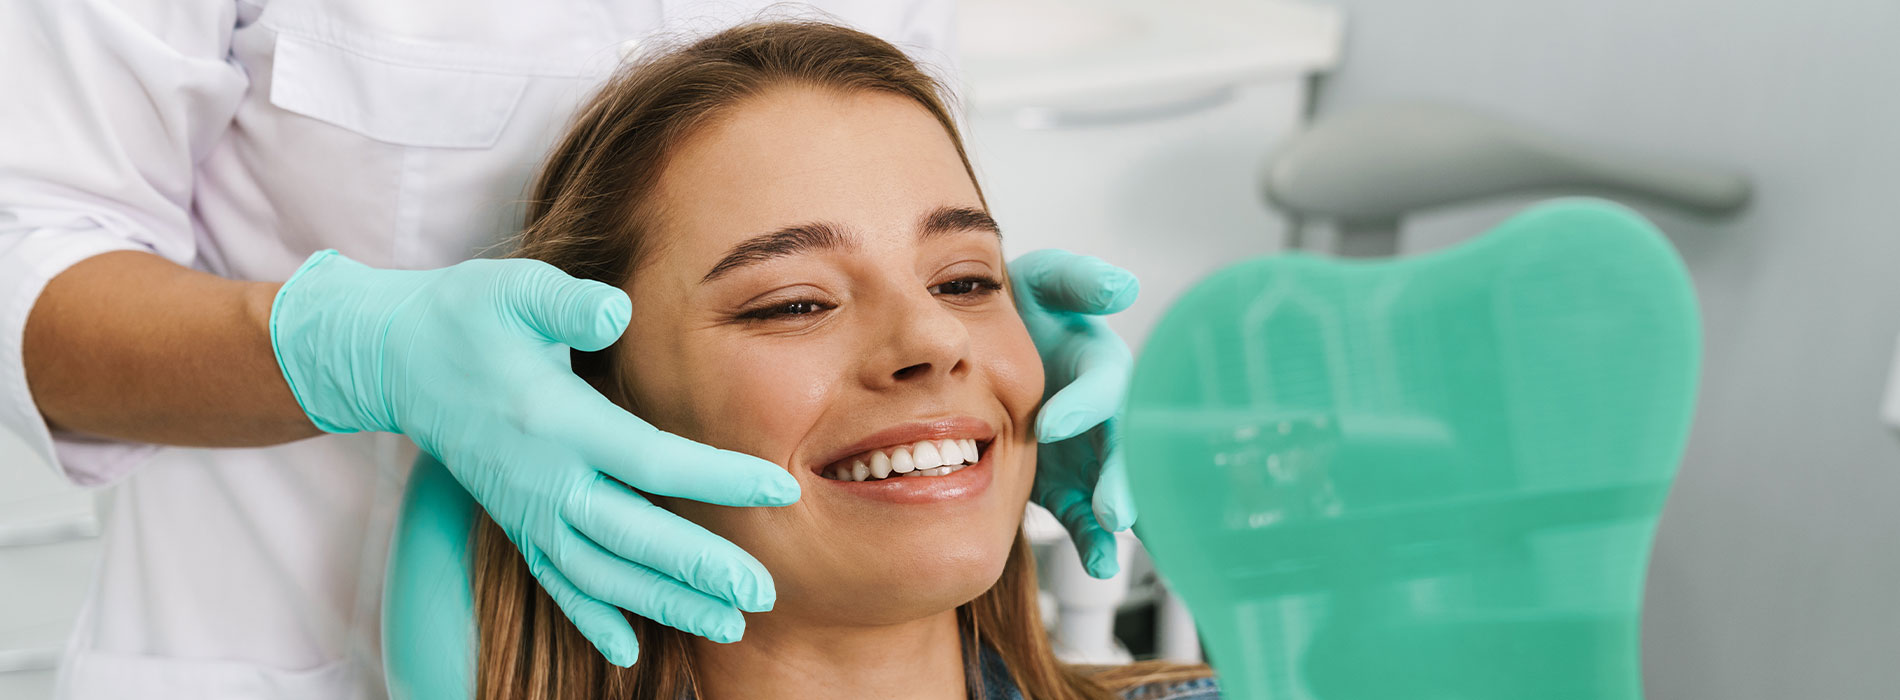 Dental Implants Dentist in Los Angeles